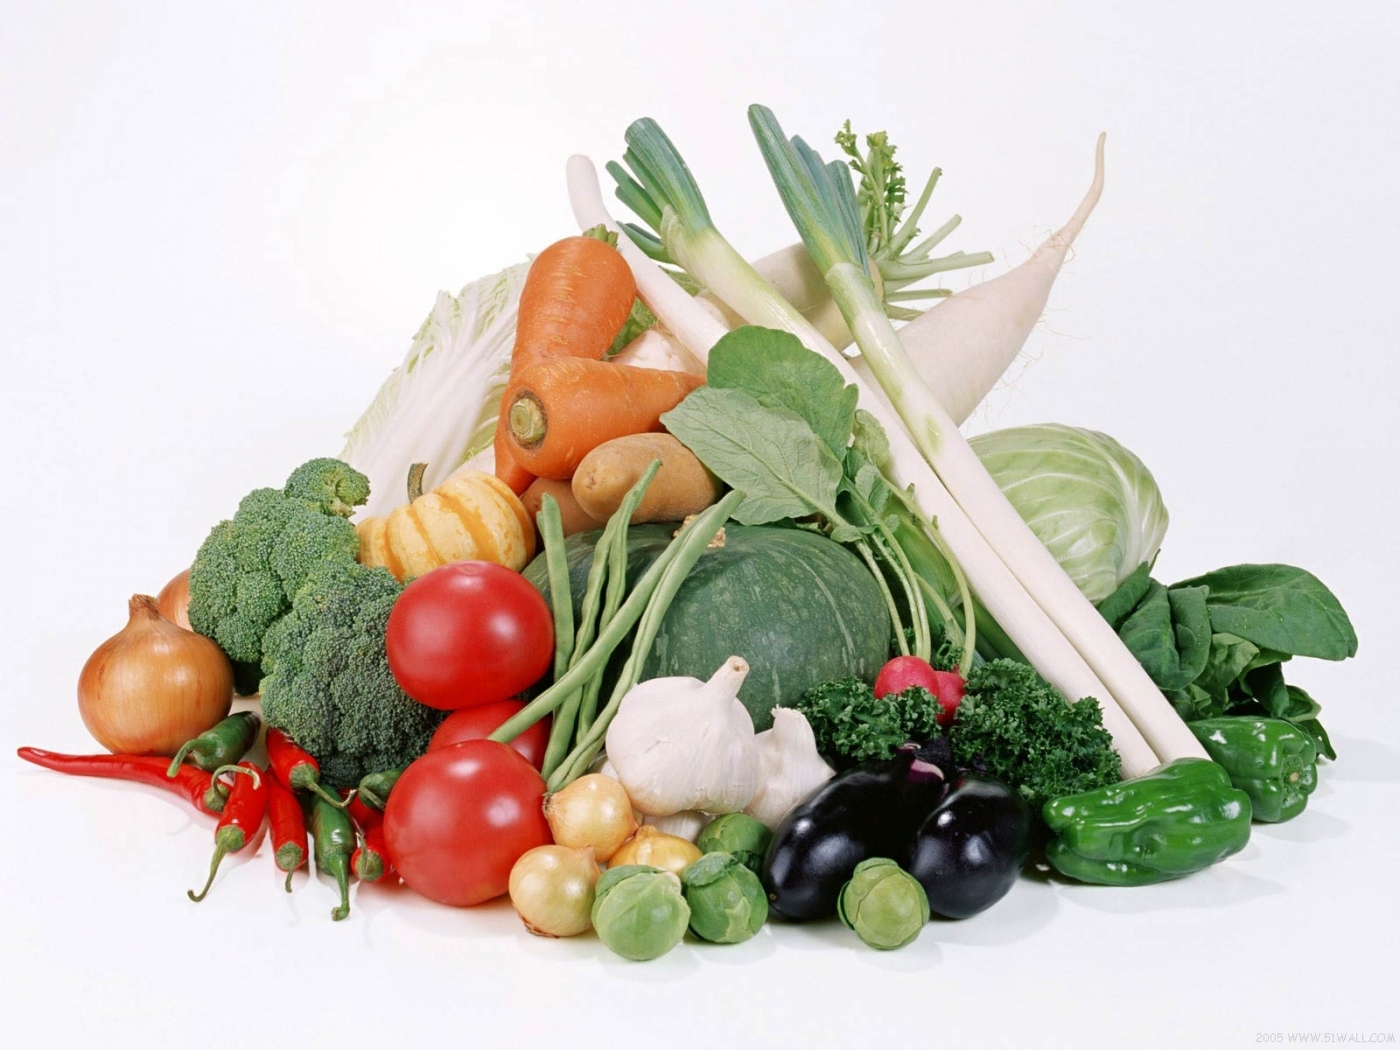 Free download wallpaper Vegetables, Food on your PC desktop